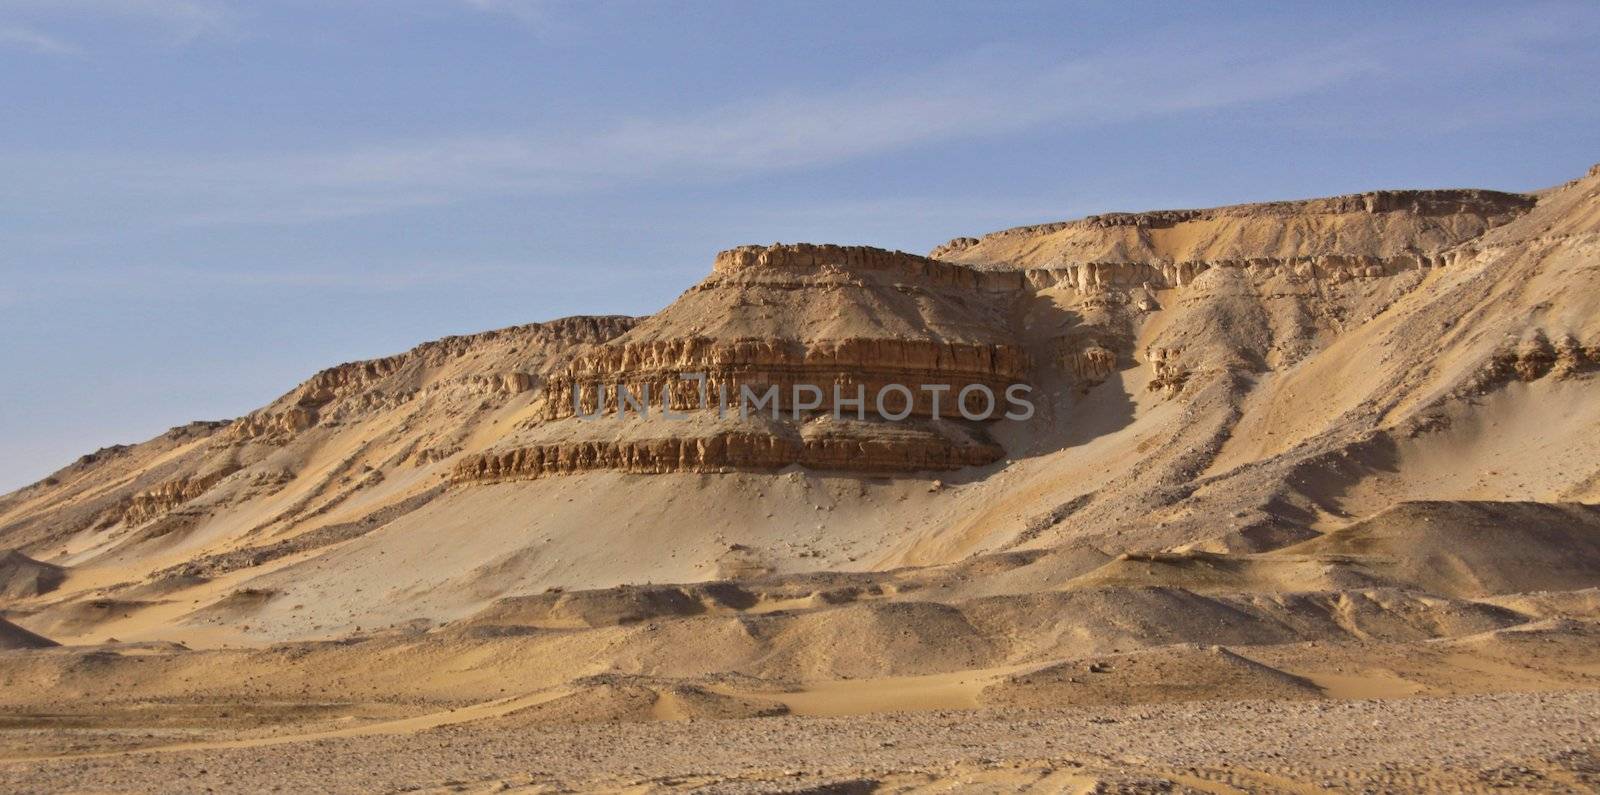 Lybian desert by jnerad